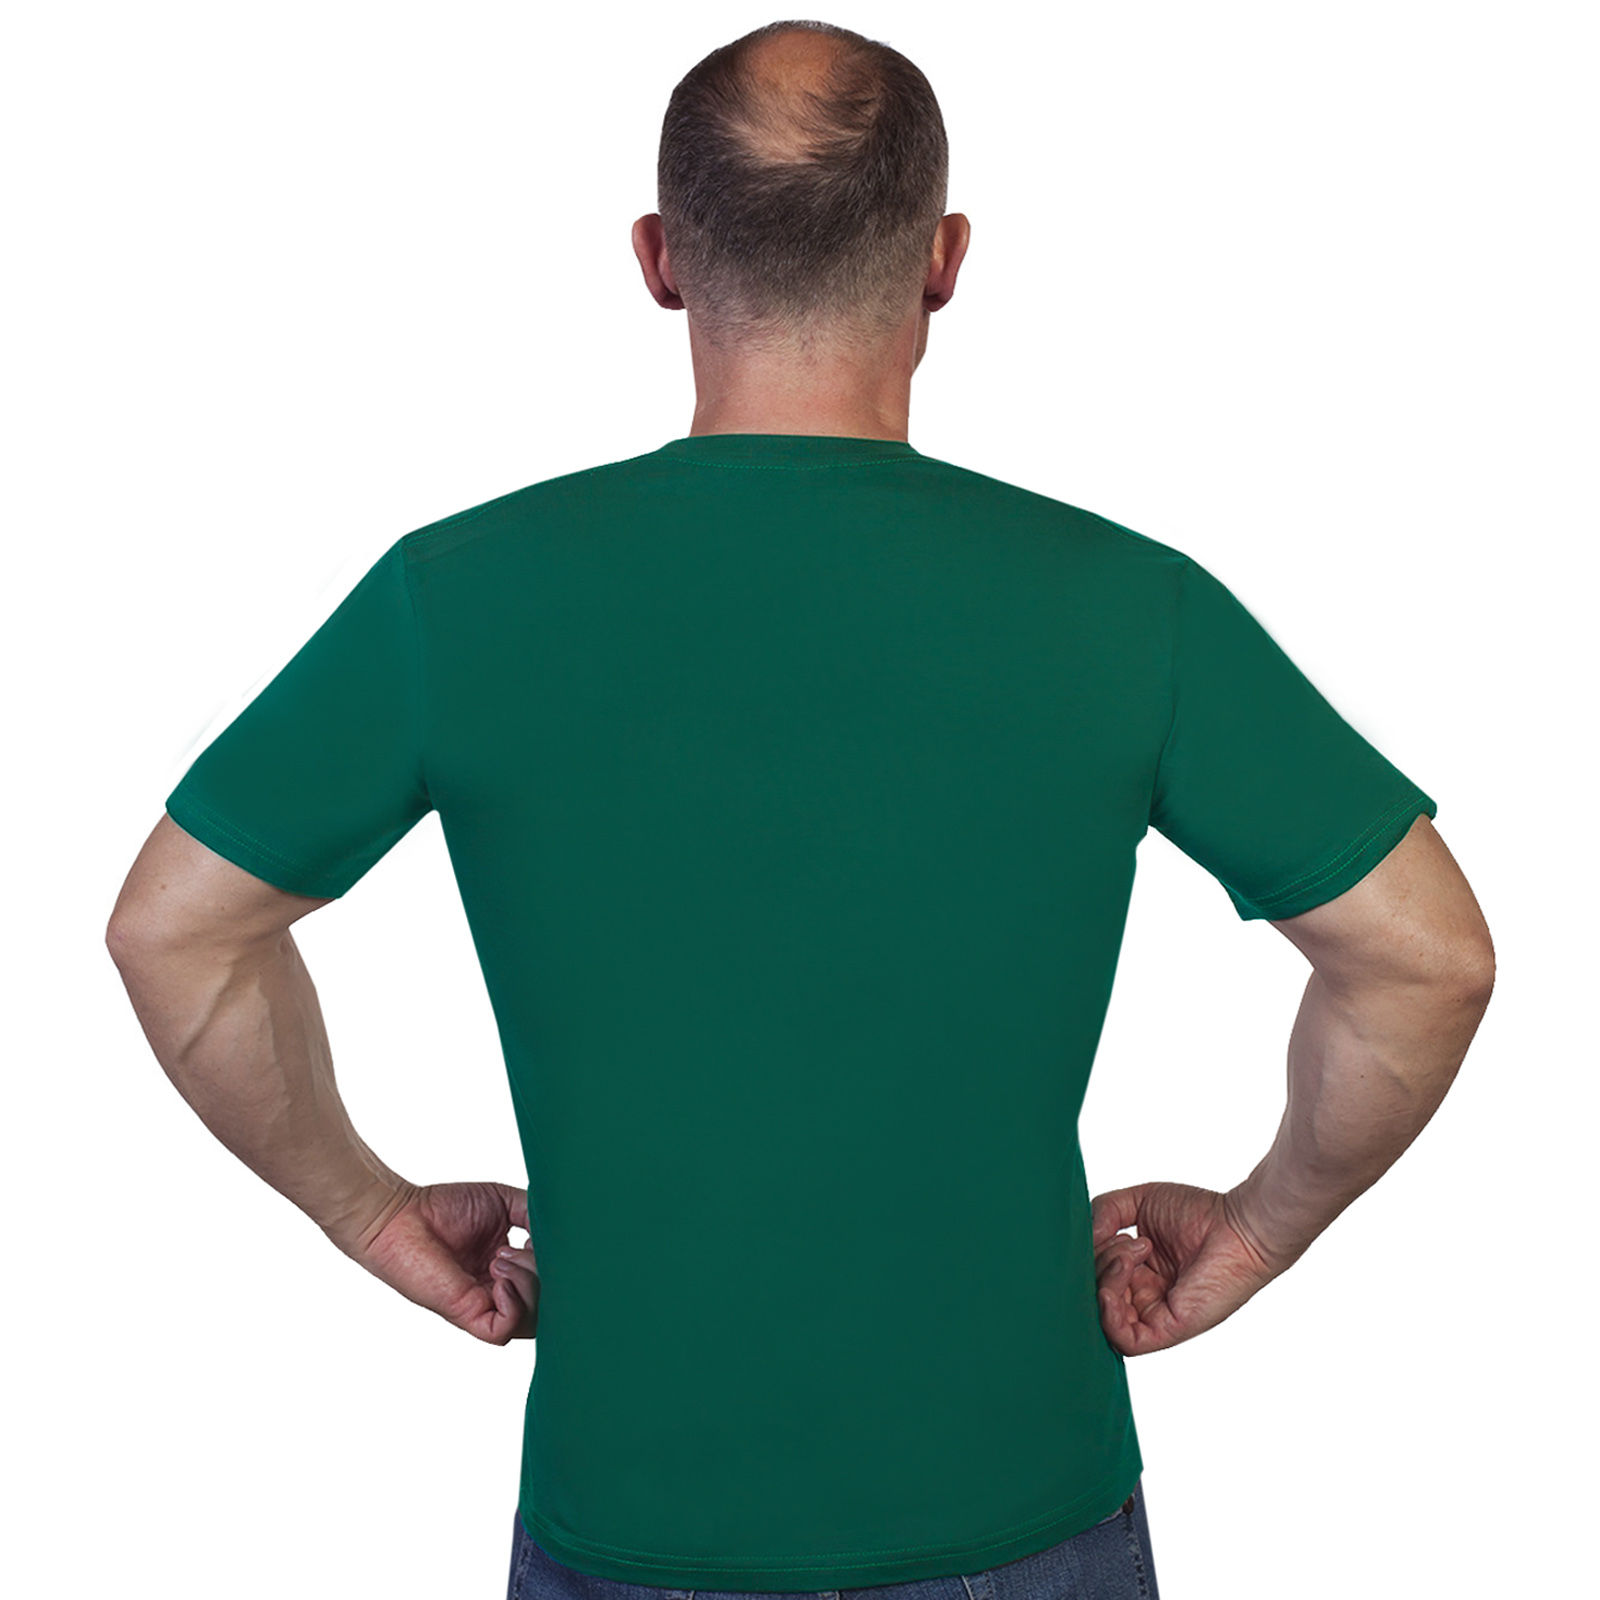 Купить в интернет магазине мужскую футболку с символикой погранвойск